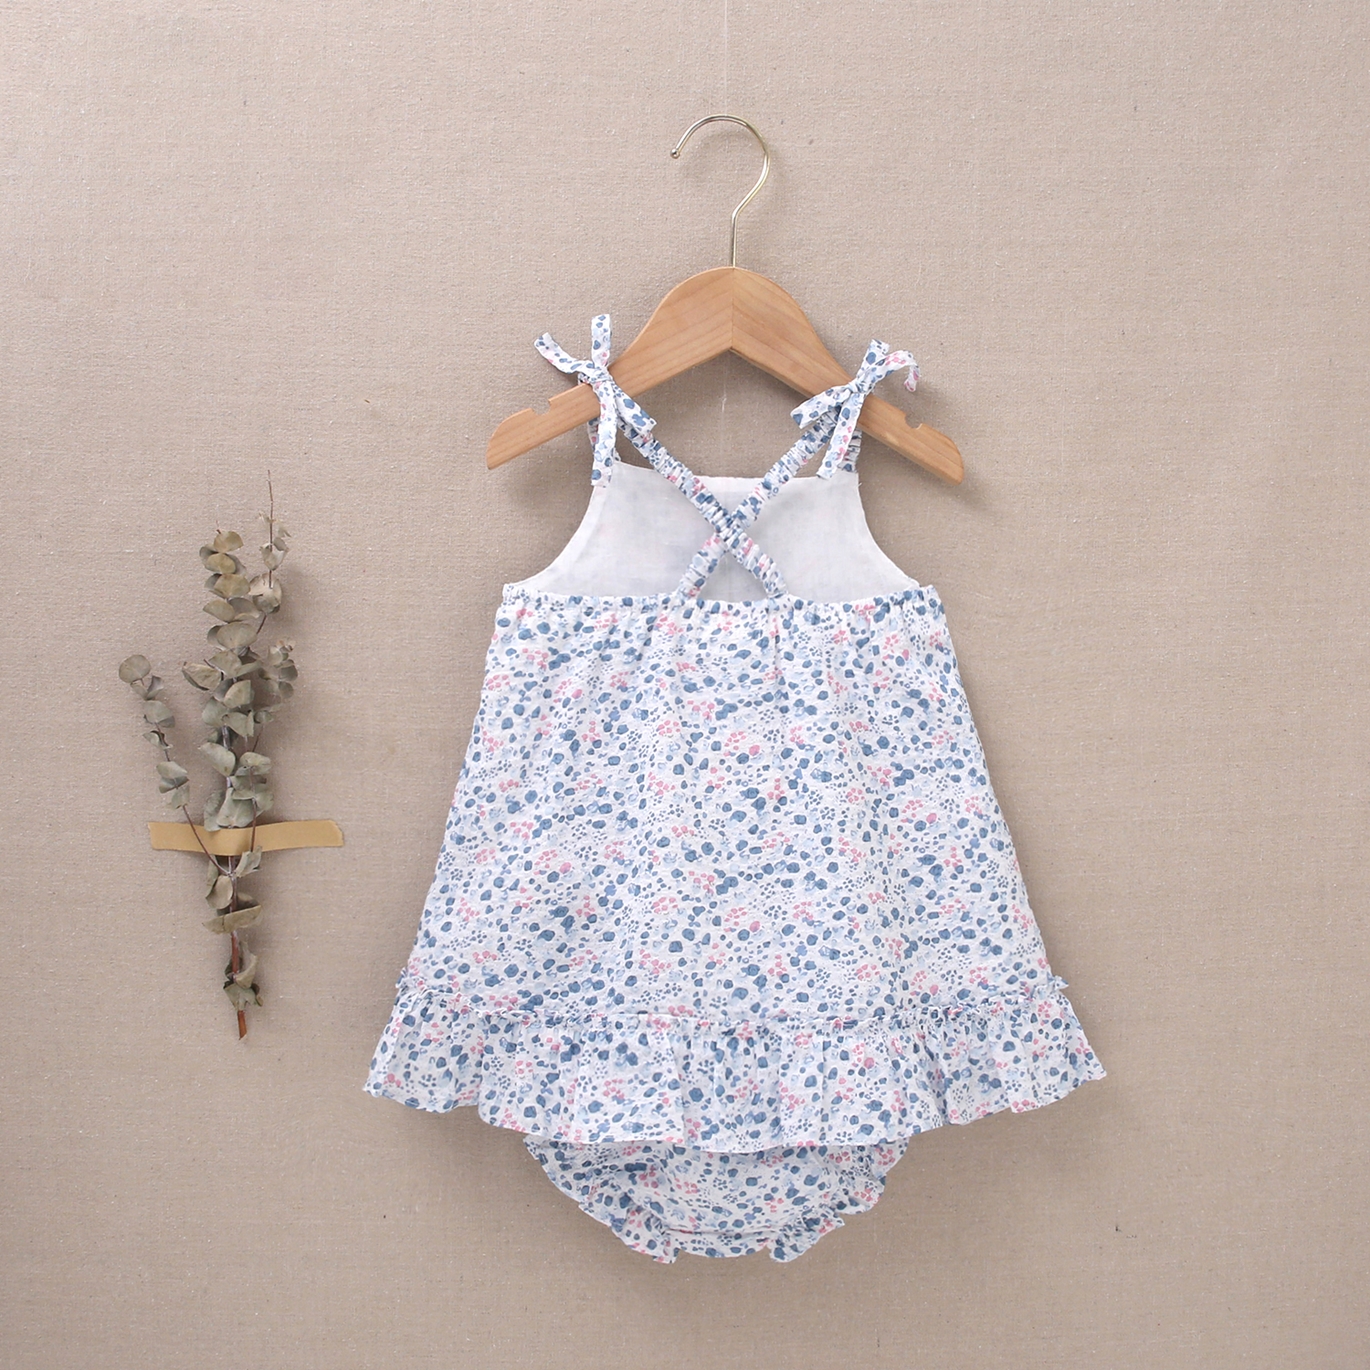 Imagen de Vestido de bebé niña con cubrepañal estampado de flores en tonos azules